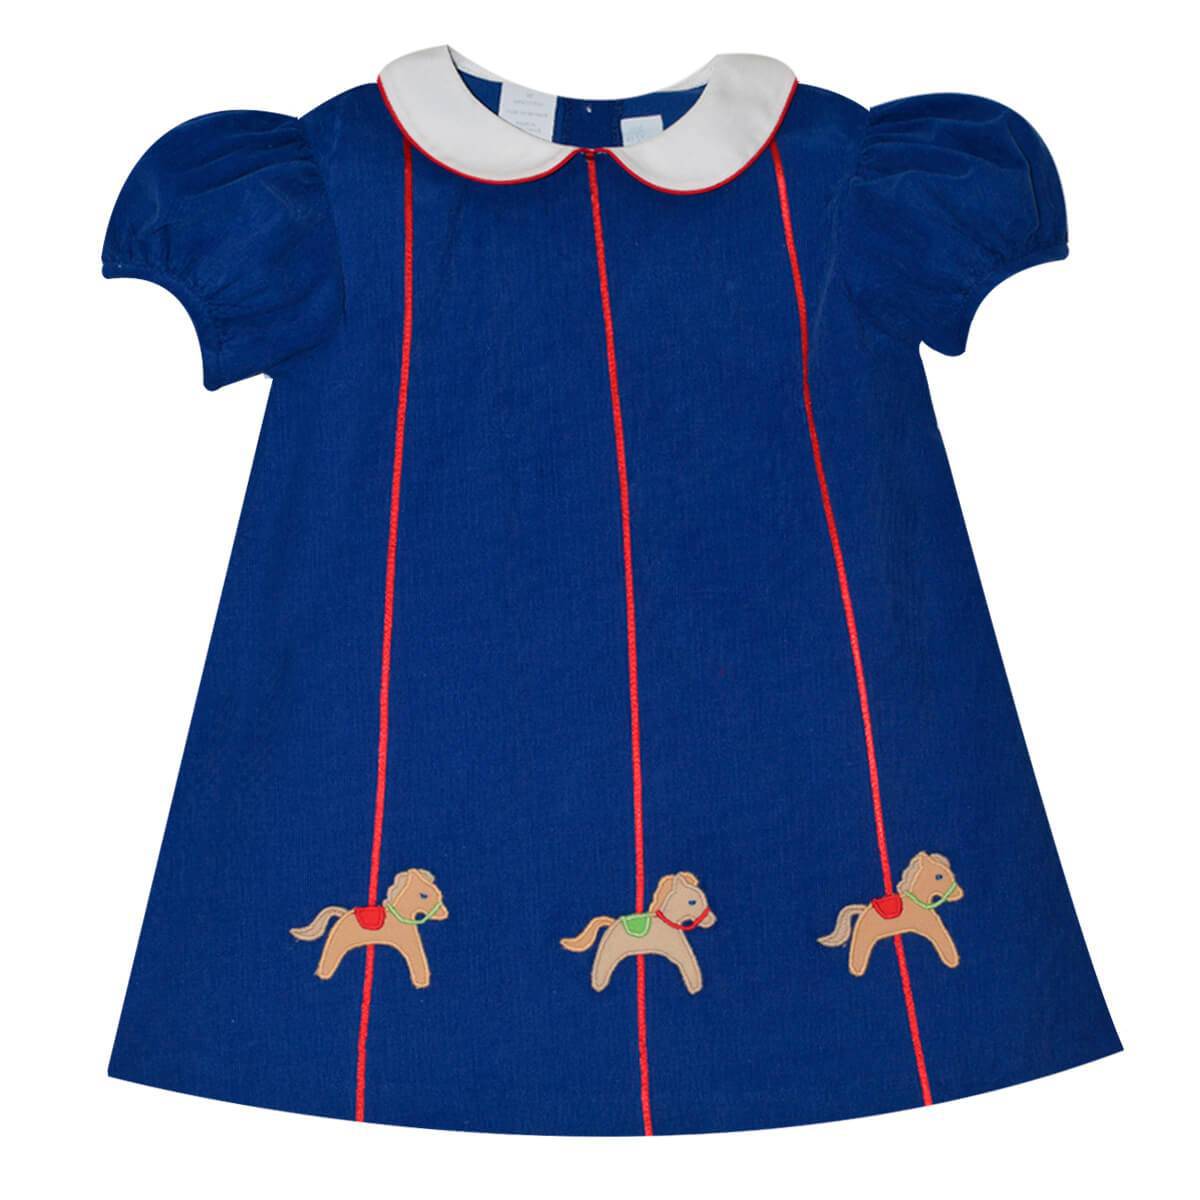 Vive La Fete - Vive La Fete Applique Carrousel Royal Corduroy A-Line Dress - Little Miss Muffin Children & Home